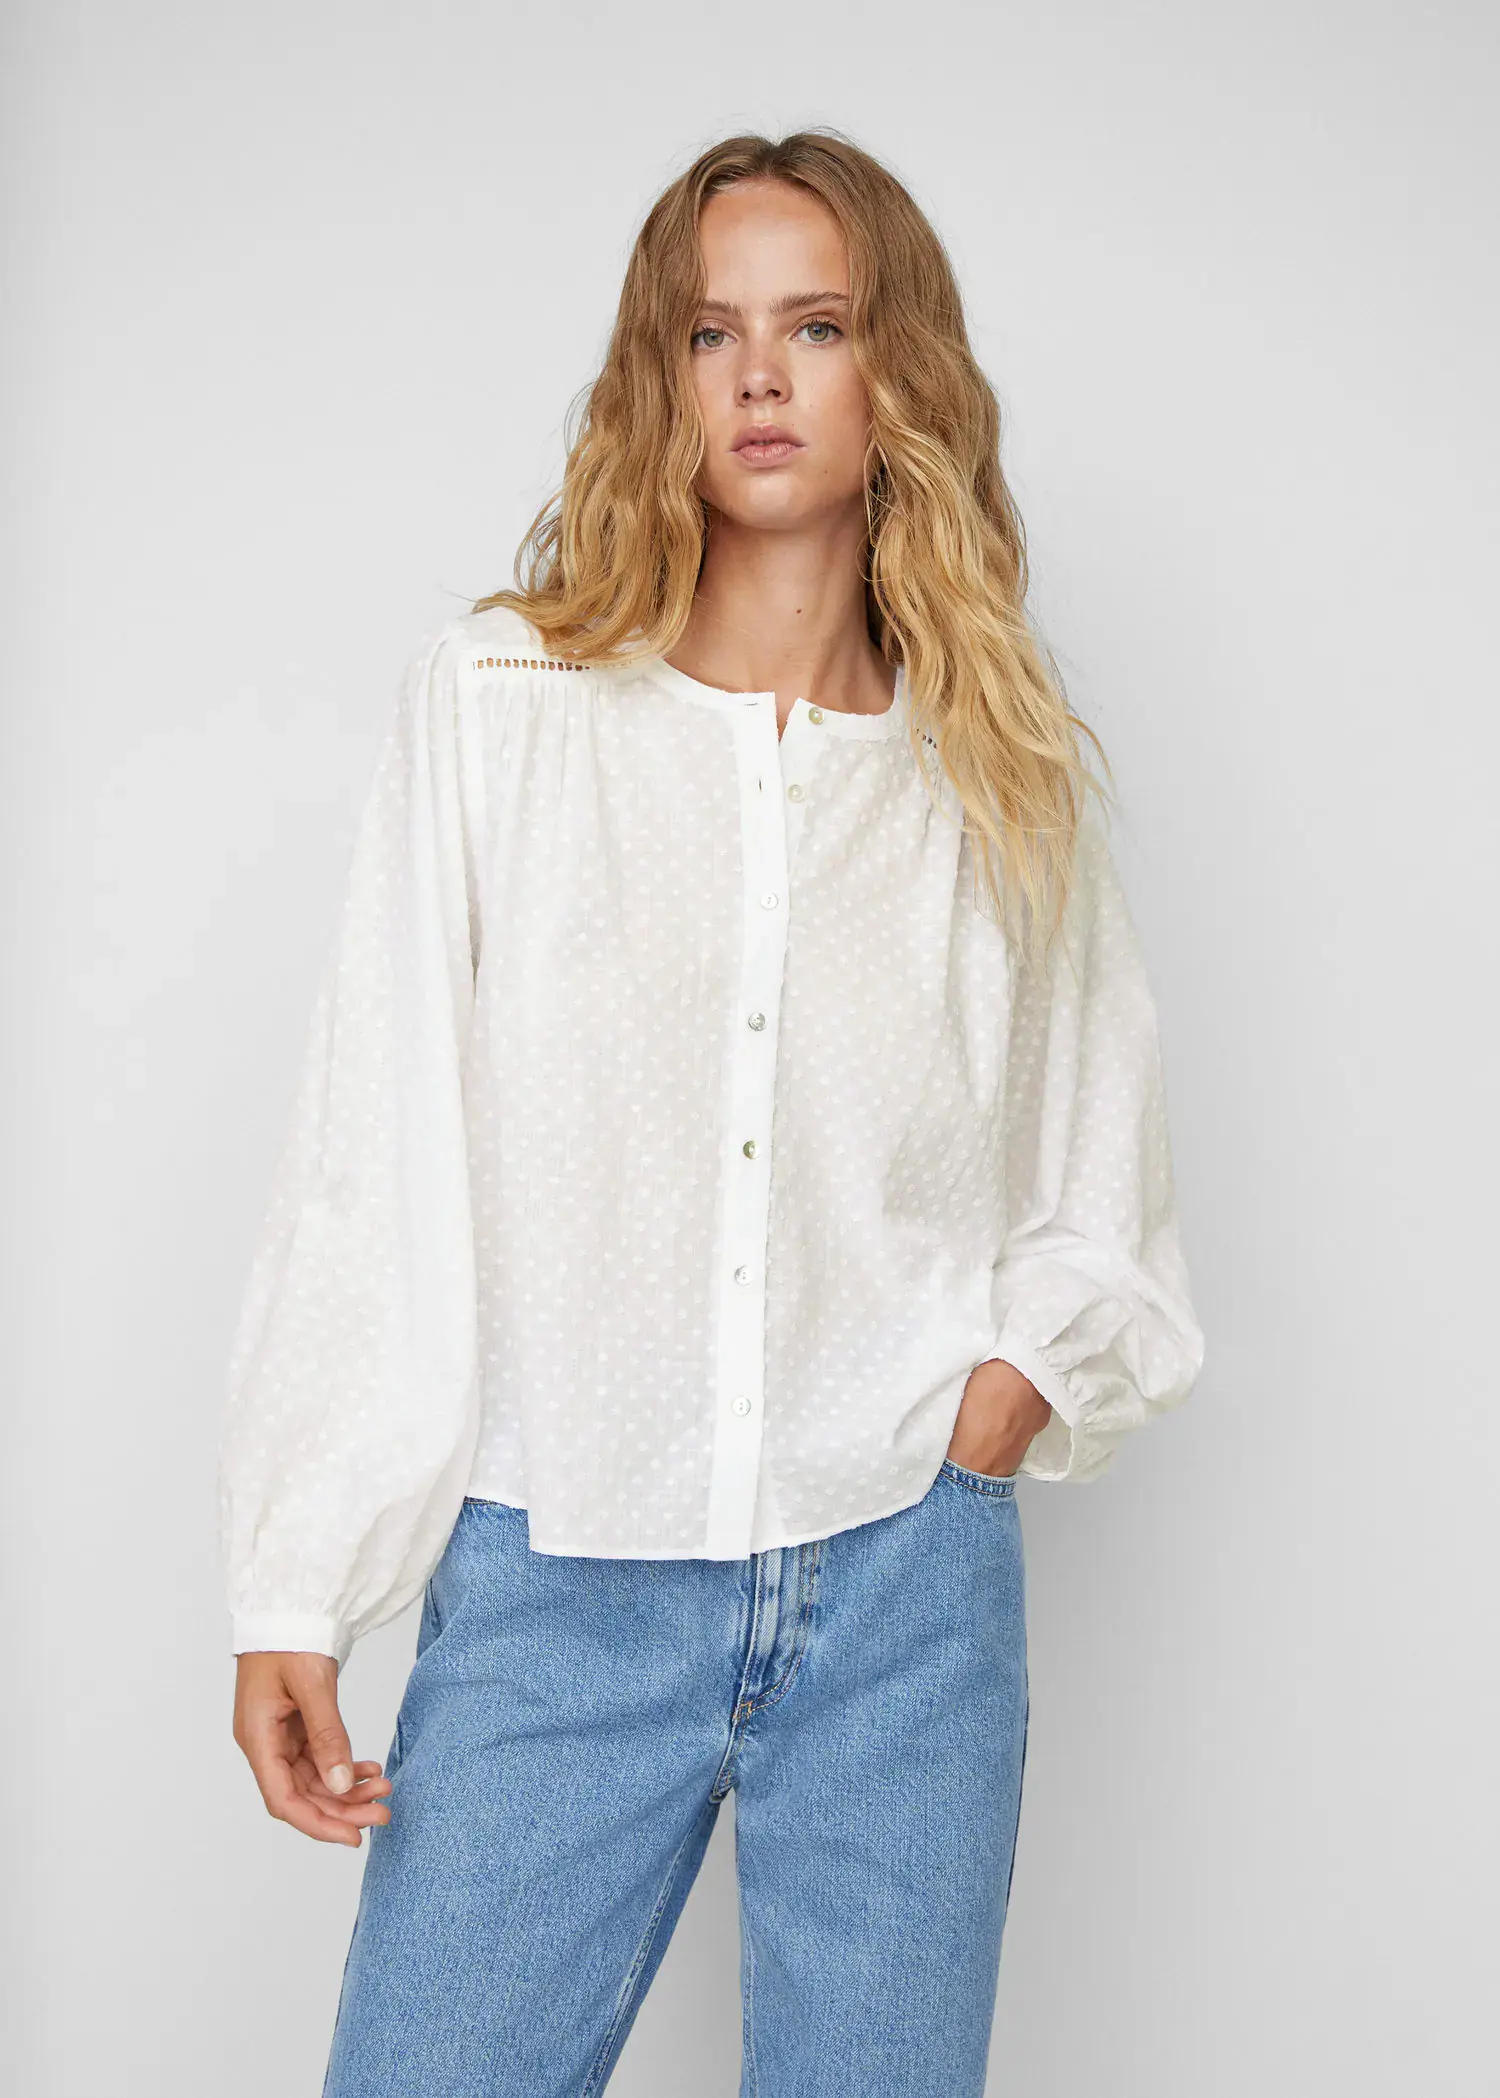 Mango Plumeti cotton blouse. 2